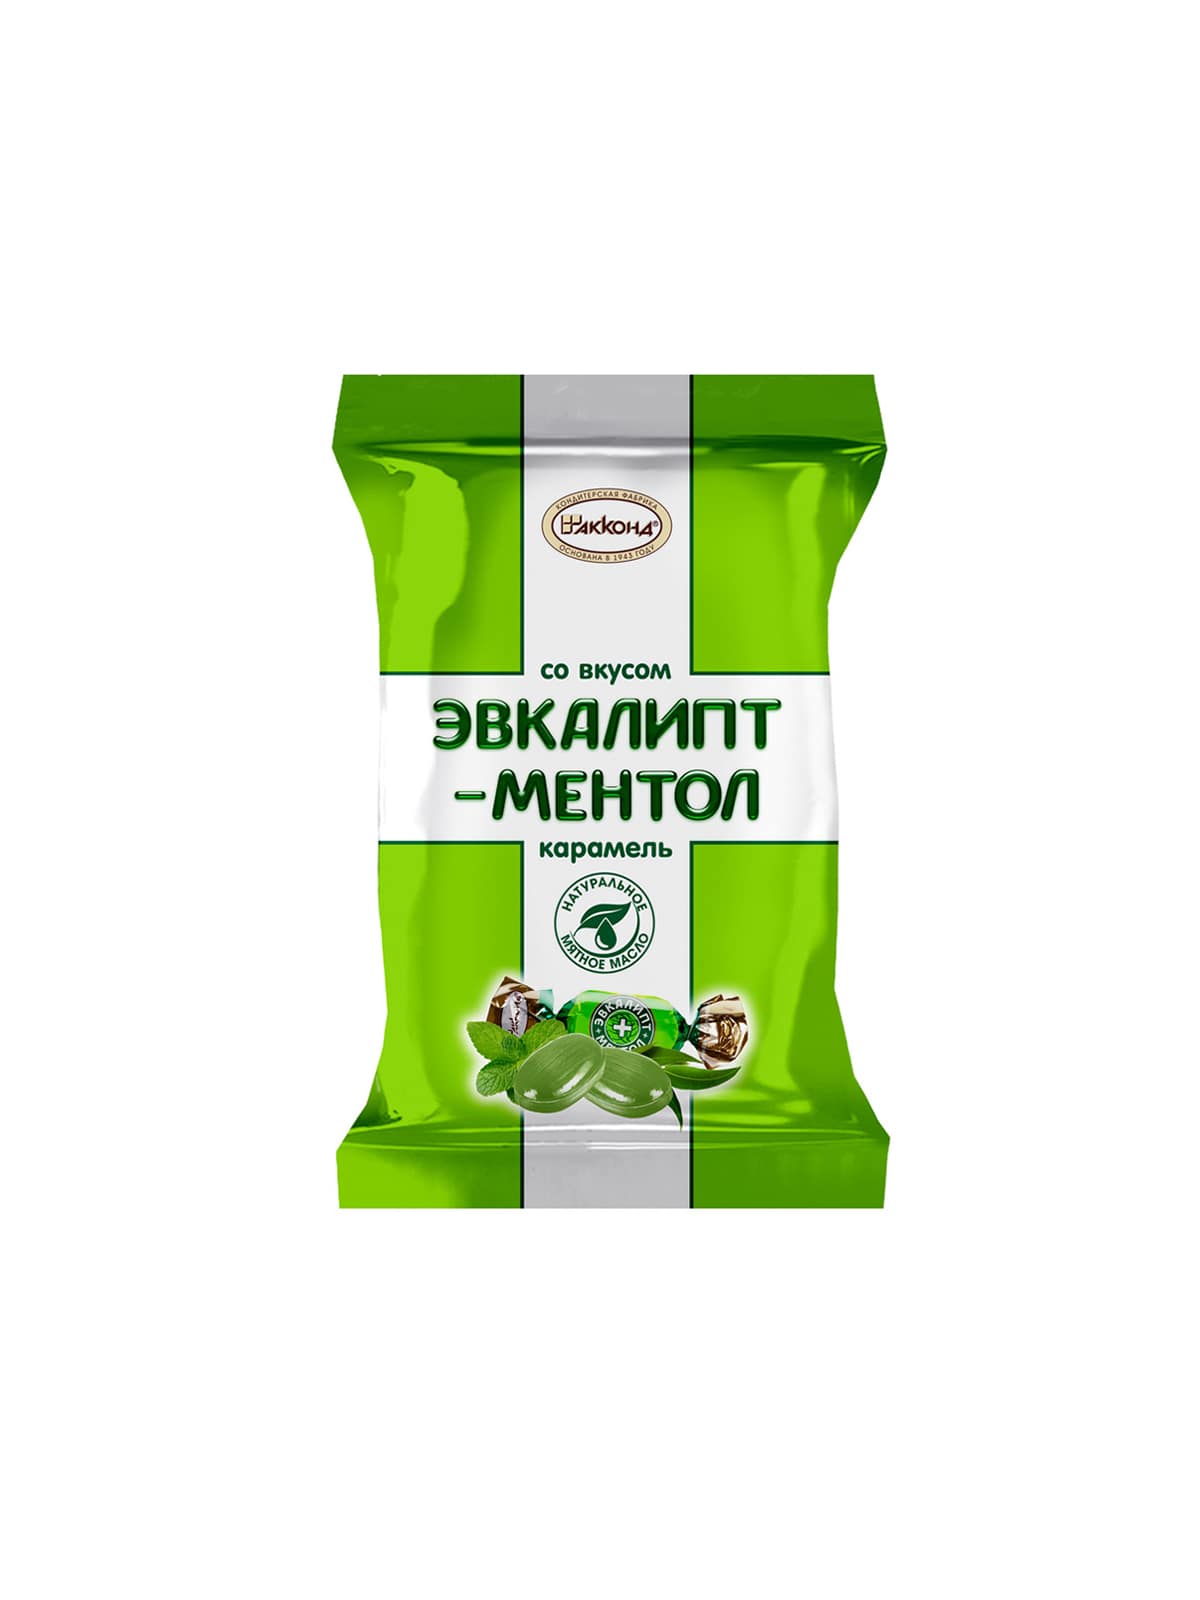 Карамель со вкусом Эвкалипт-Ментол 150г